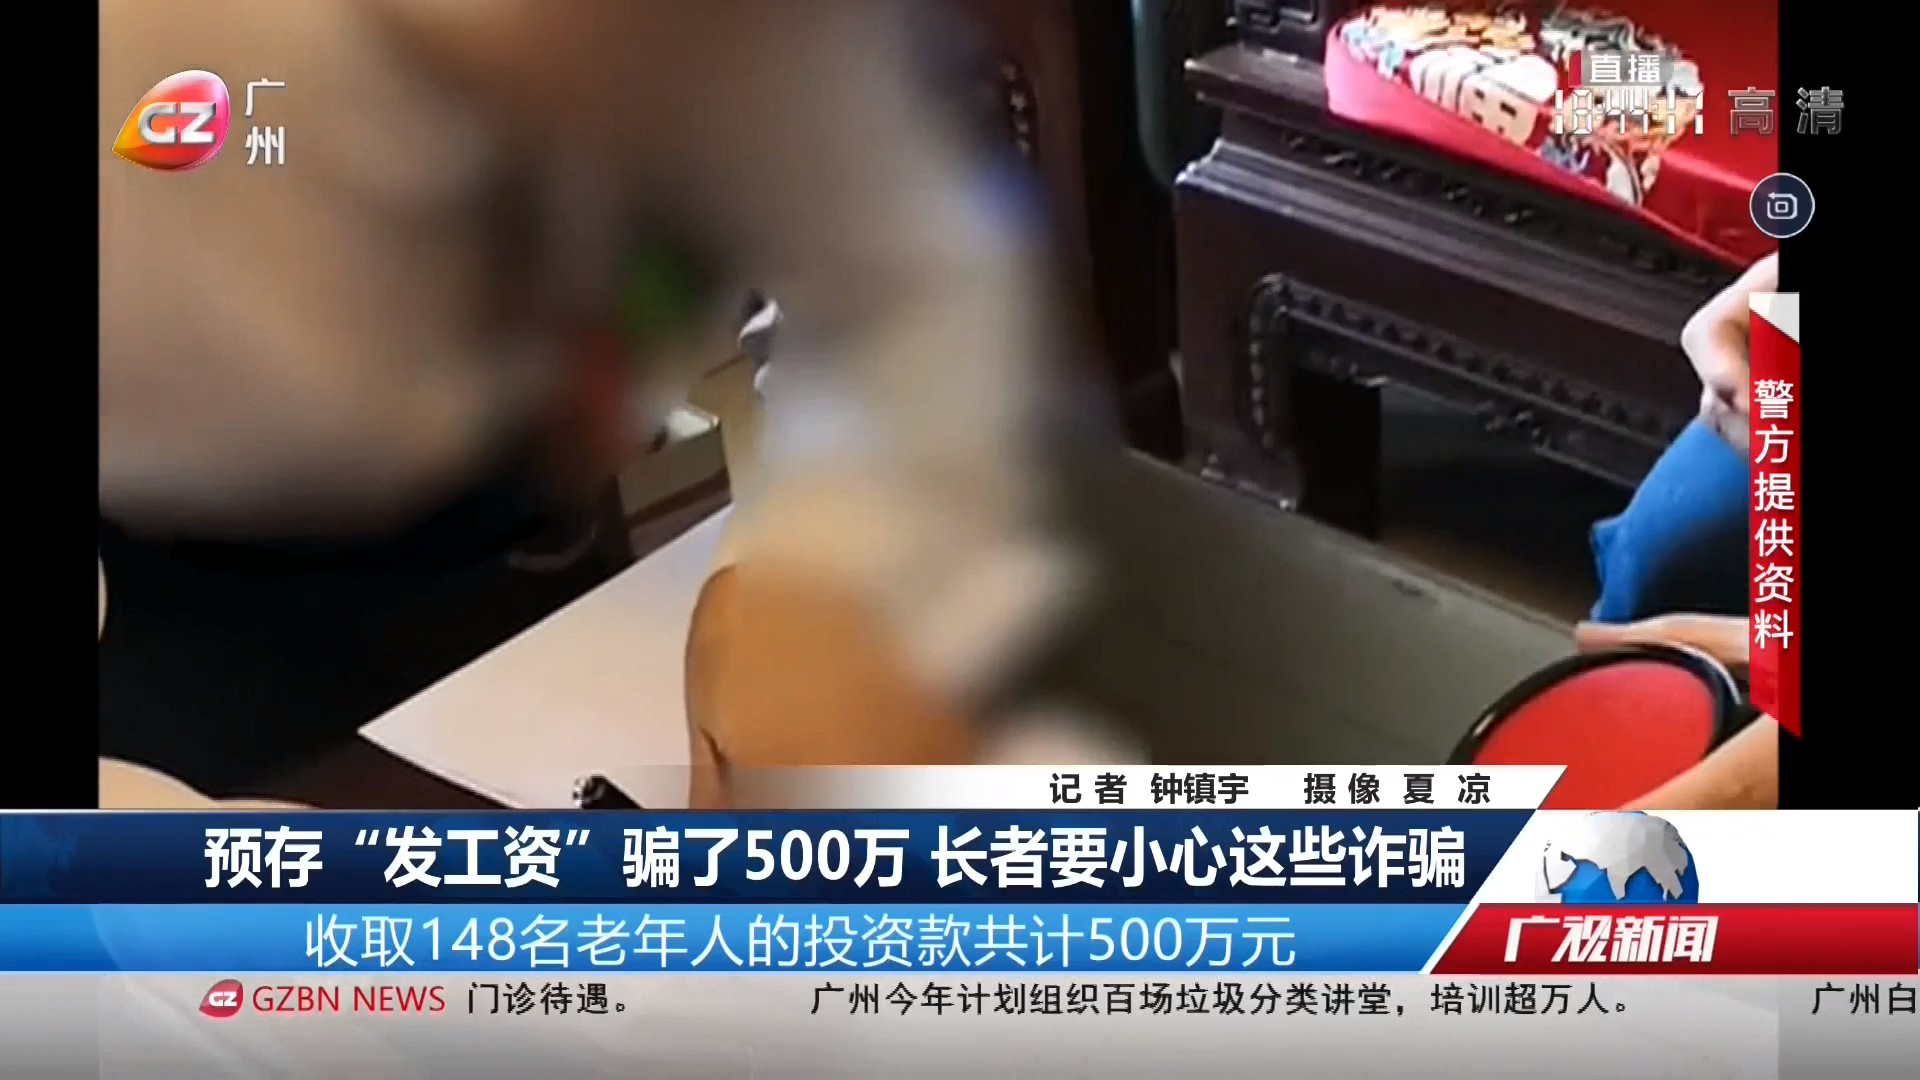 20220528广州台综合频道 广视新闻 预存“发工资”骗了500万 长者要小心这些诈骗